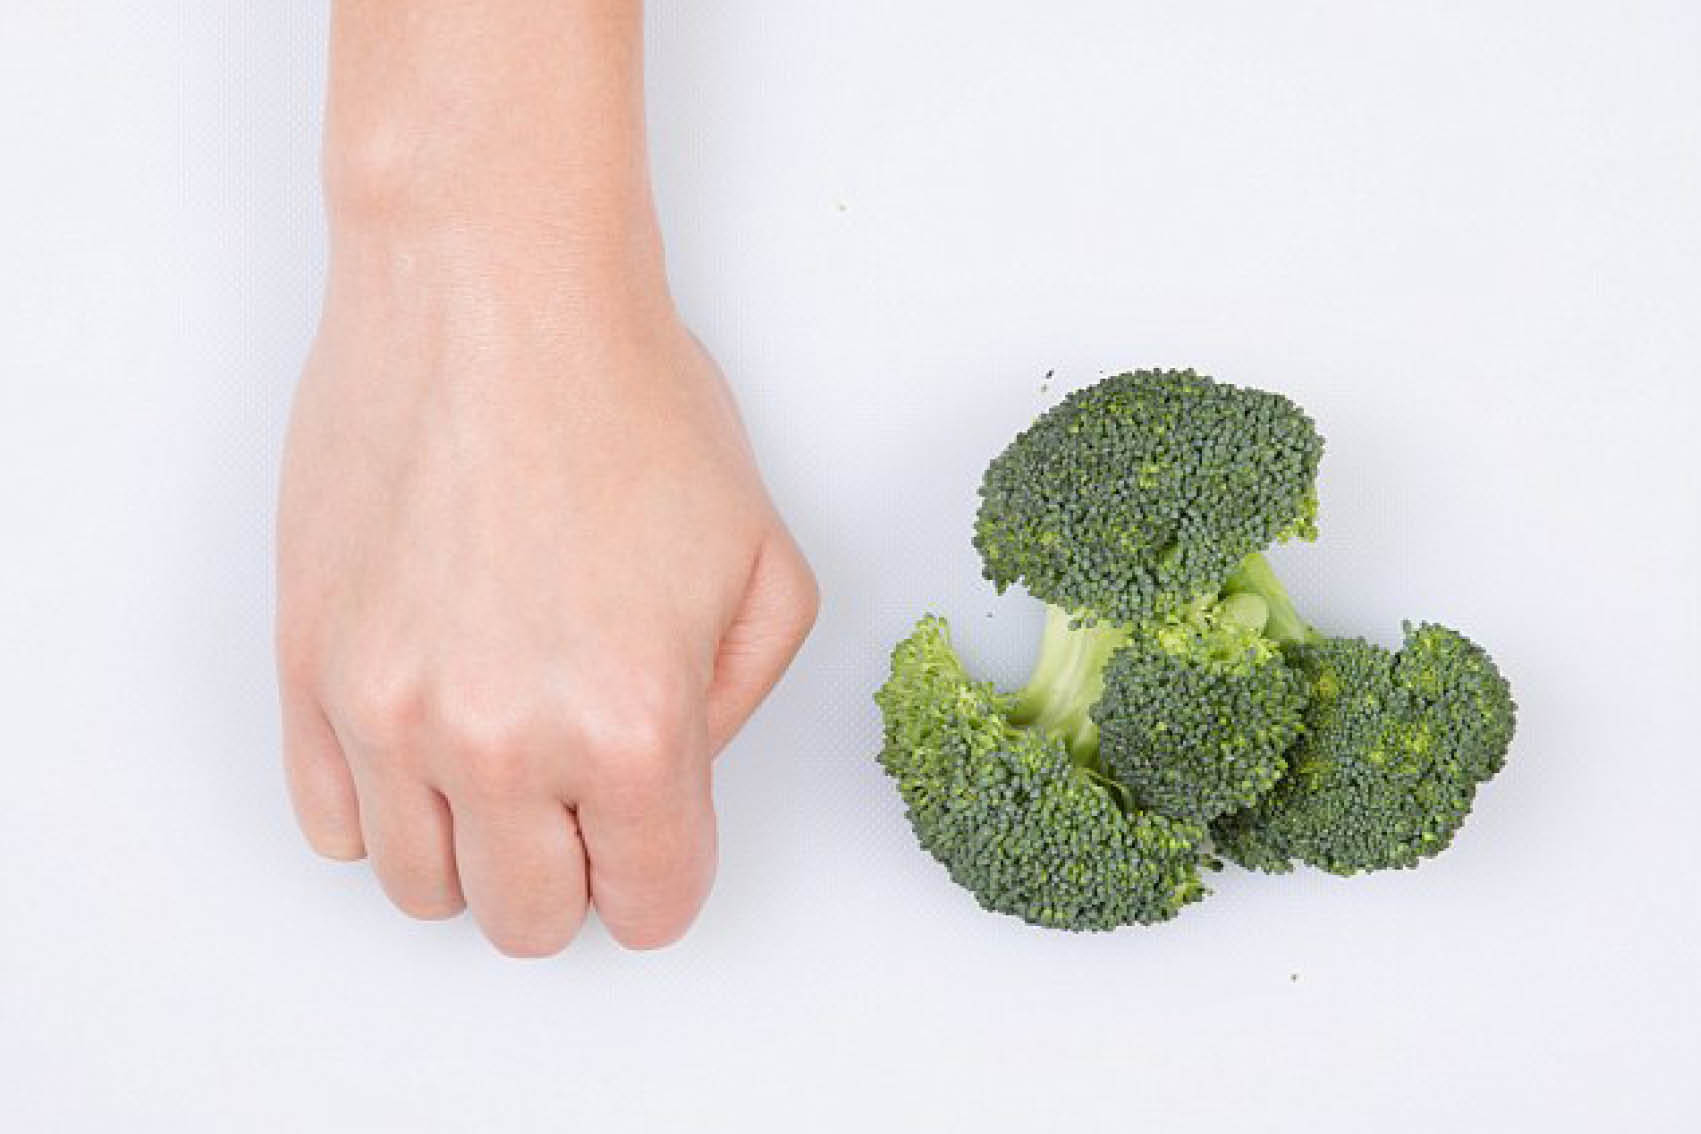 Voor groenten kun je de grootte van je vuist aanhouden. Dit staat ongeveer gelijk aan 80 gram. Drie vuistjes groente per dag, en je hebt je dagelijks aanbevolen hoeveelheid groenten binnen! Probeer wel lekker te variëren natuurlijk! 